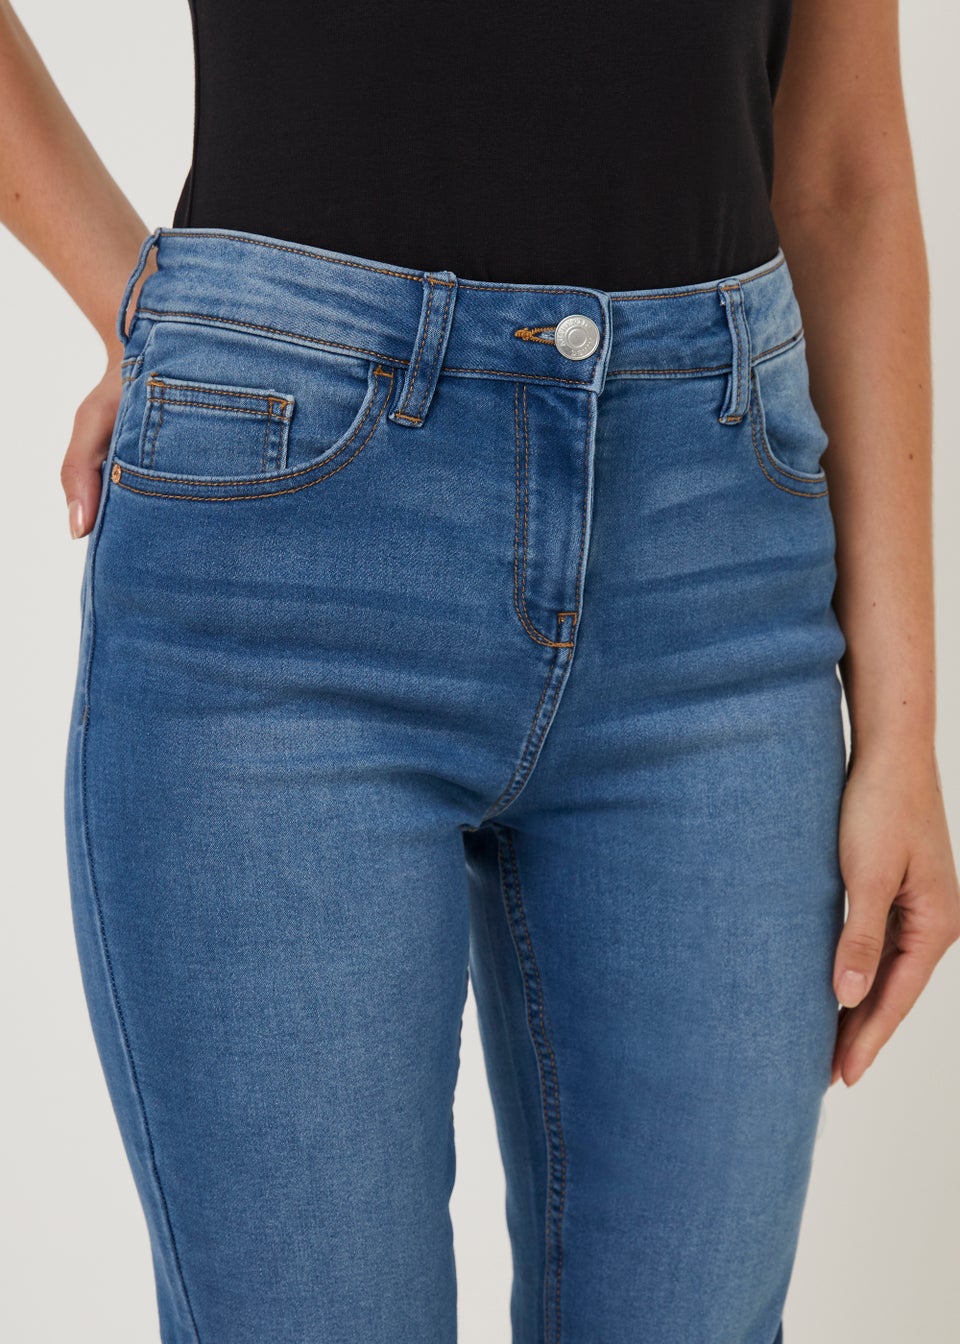 Papaya Petite Свободные джинсы скинни средней степени стирки Jolie, темно-голубой